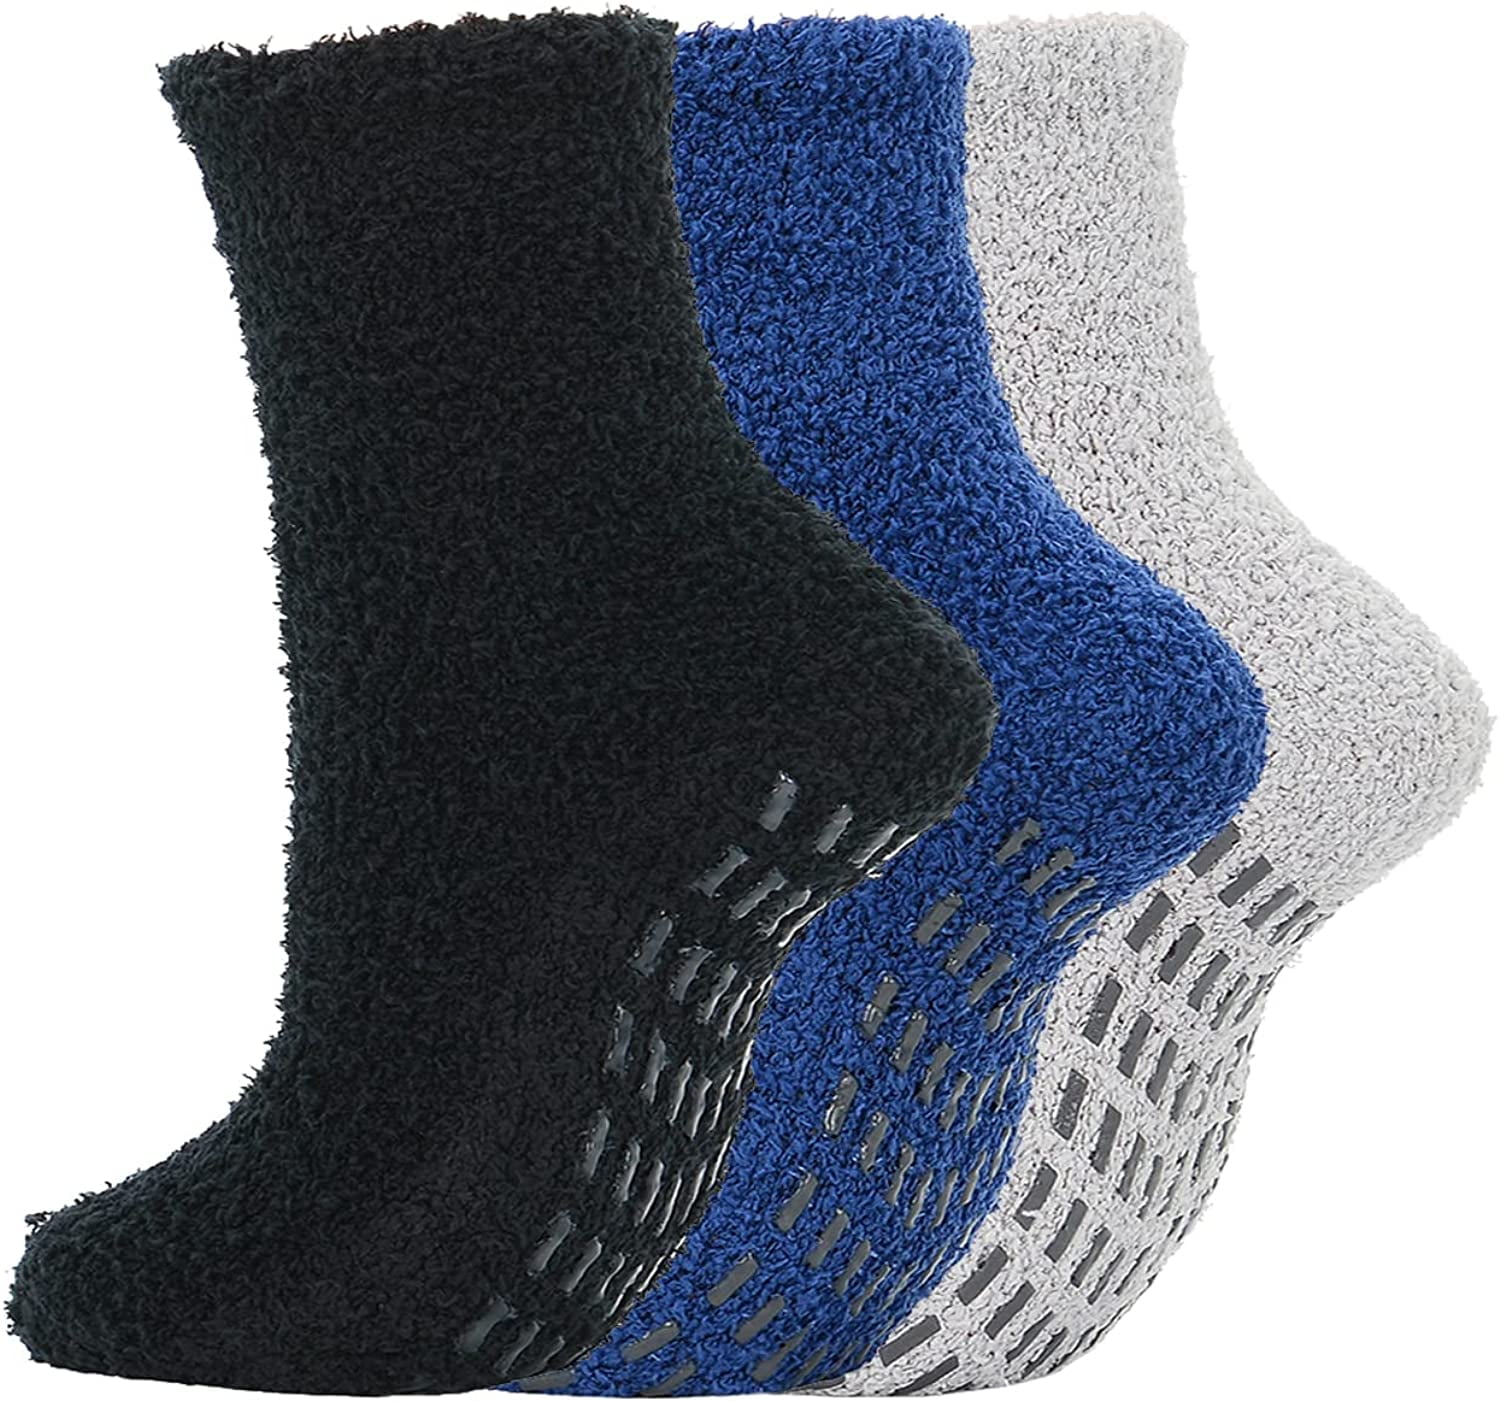 Grip Socks for Women Non Slip Hospital Anti-Slip Fuzzy Socks Pilates ...